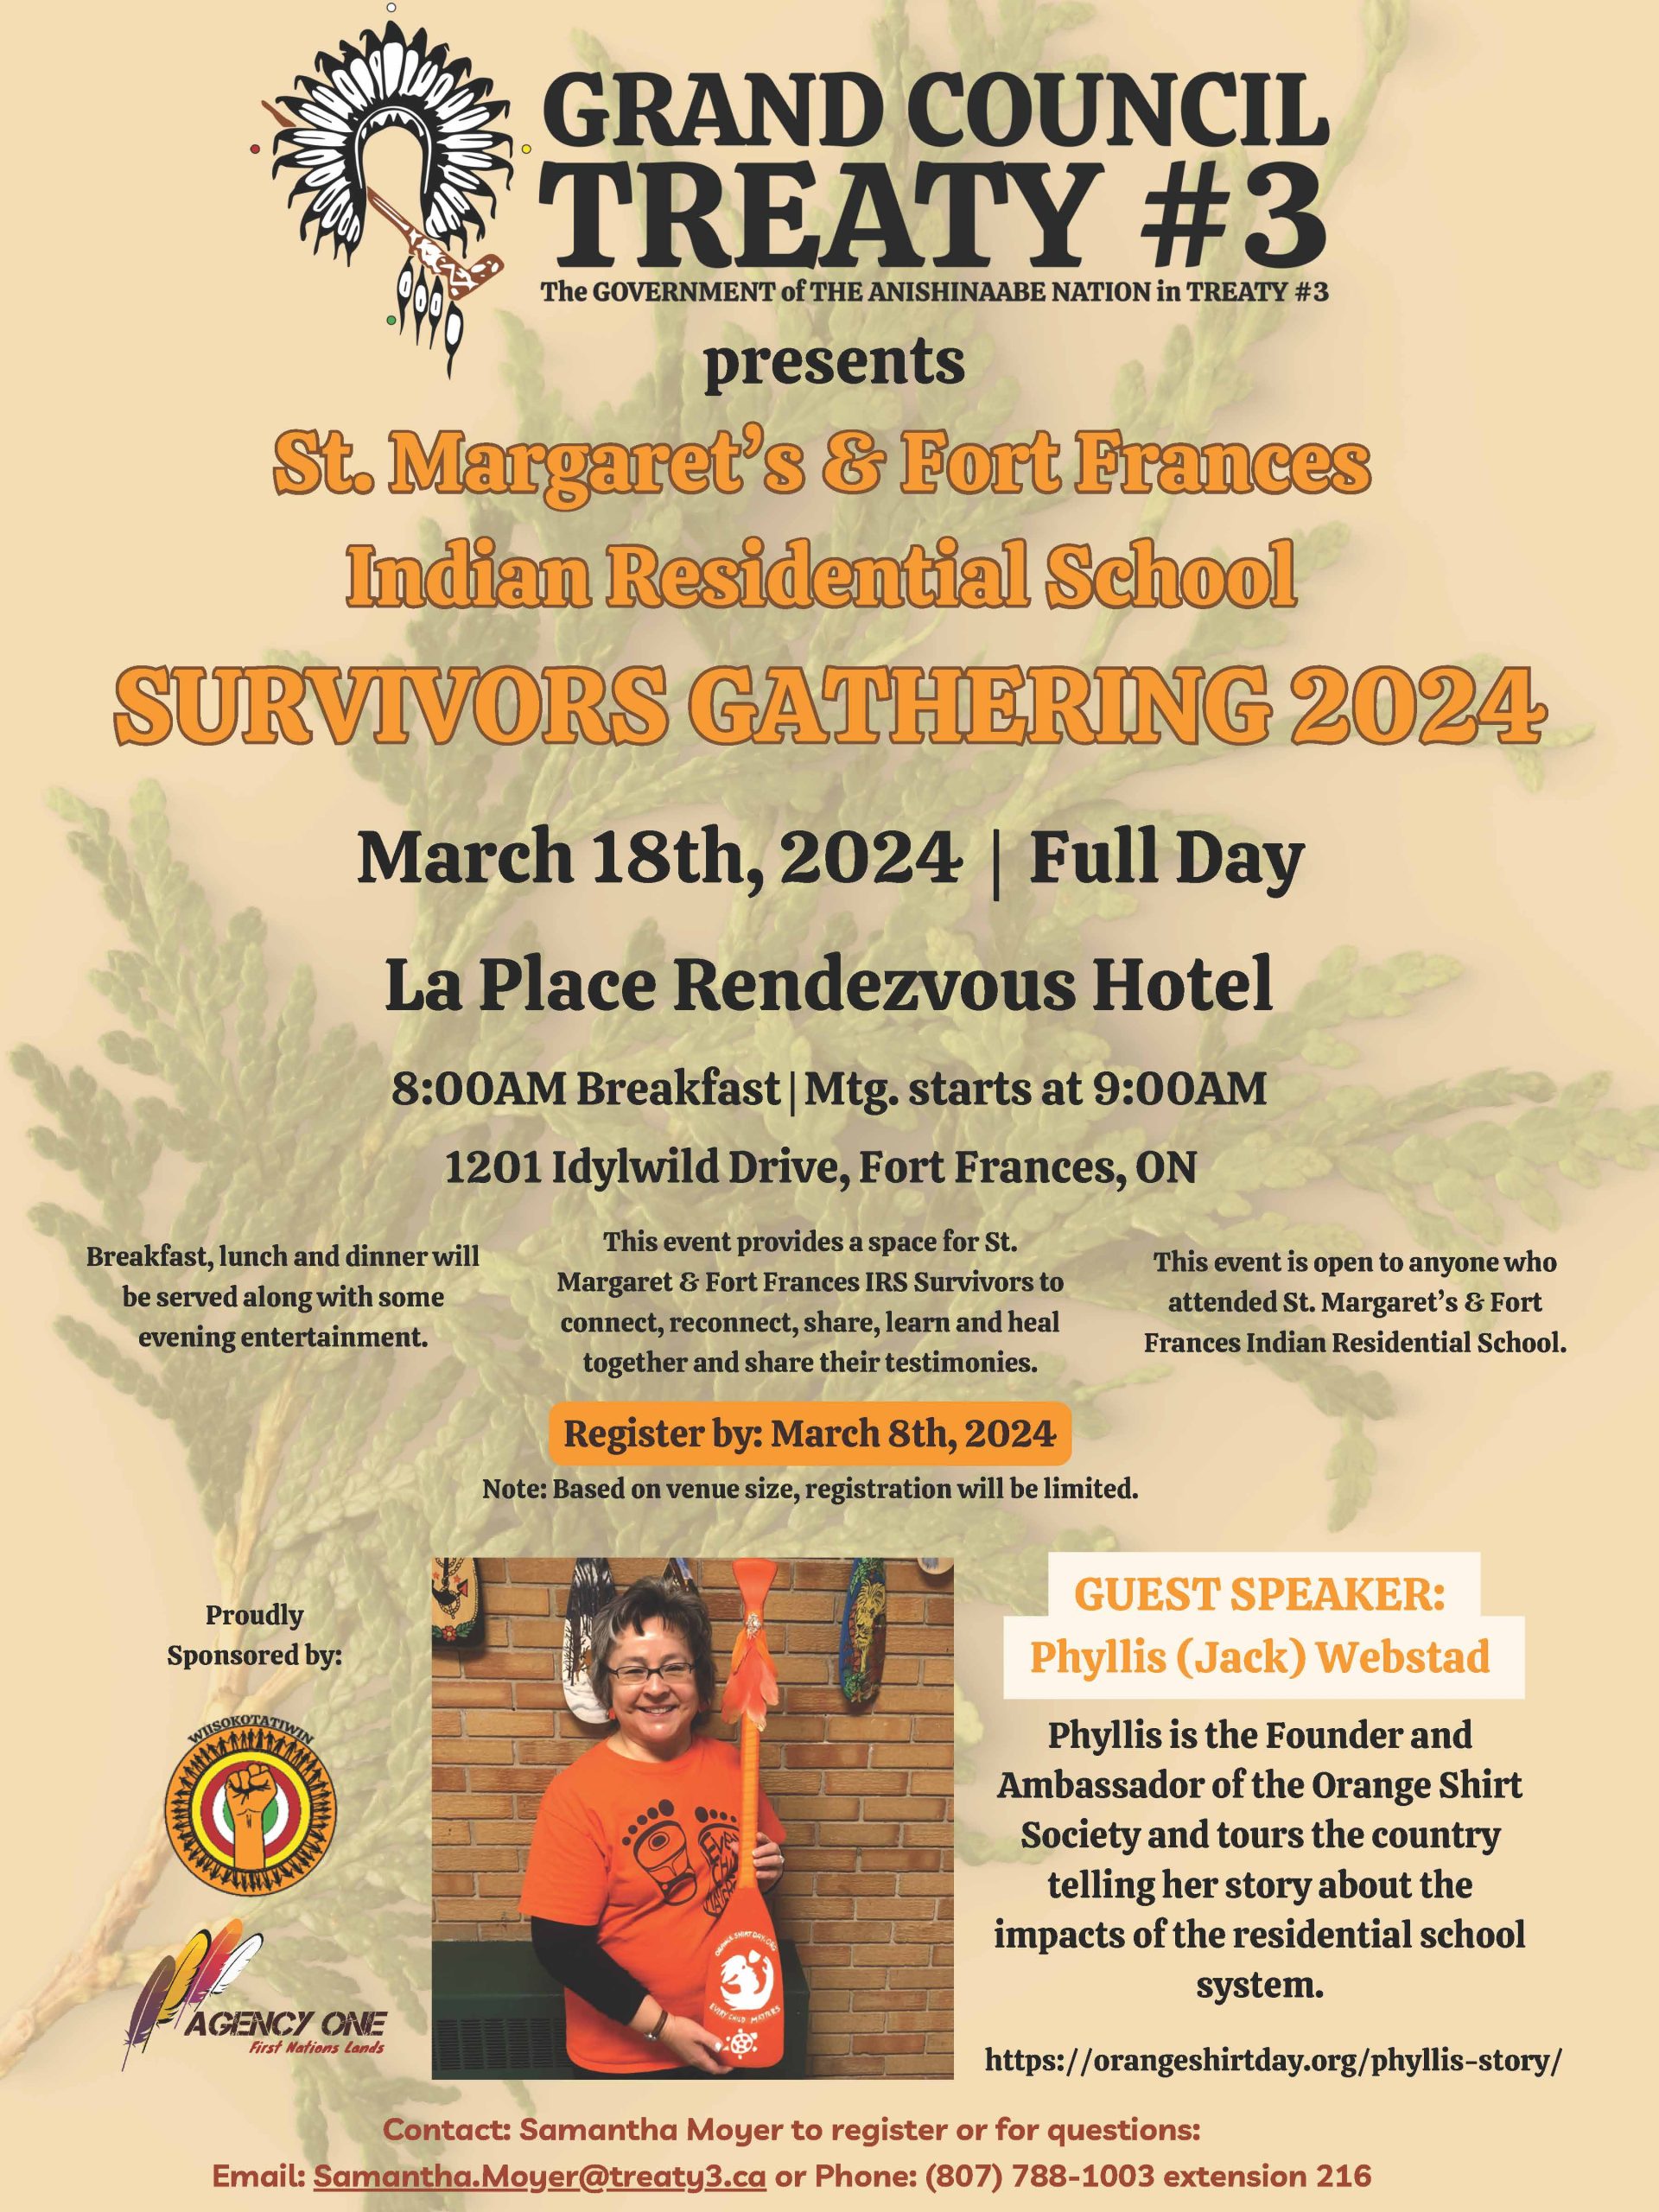 St. Margaret’s & Fort Frances Indian Residential School Survivors Gathering 2024